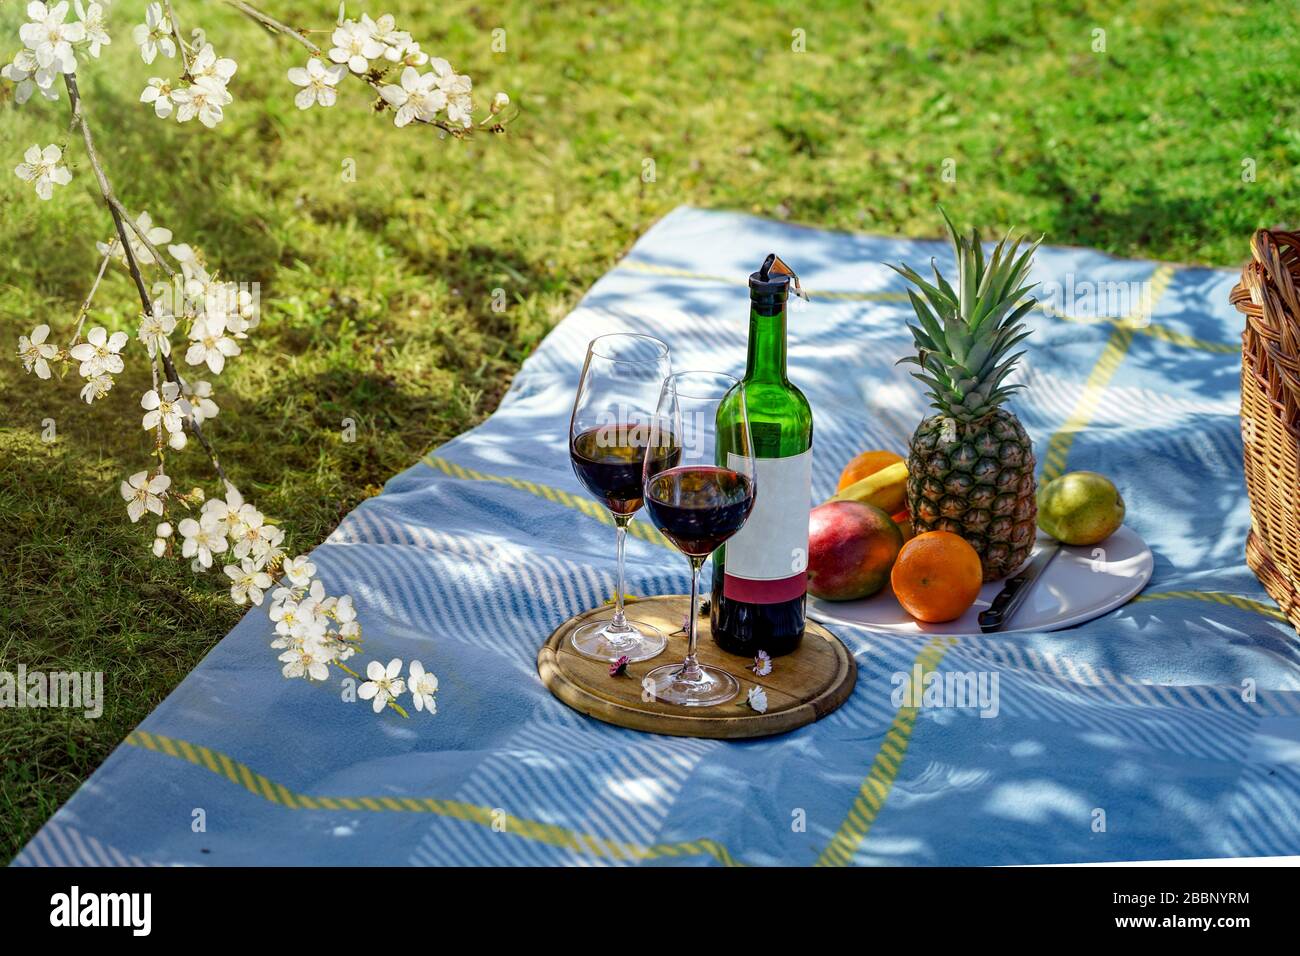 les activités à la maison pendant l'isolement ont un pique-nique avec du vin dans votre propre jardin Banque D'Images